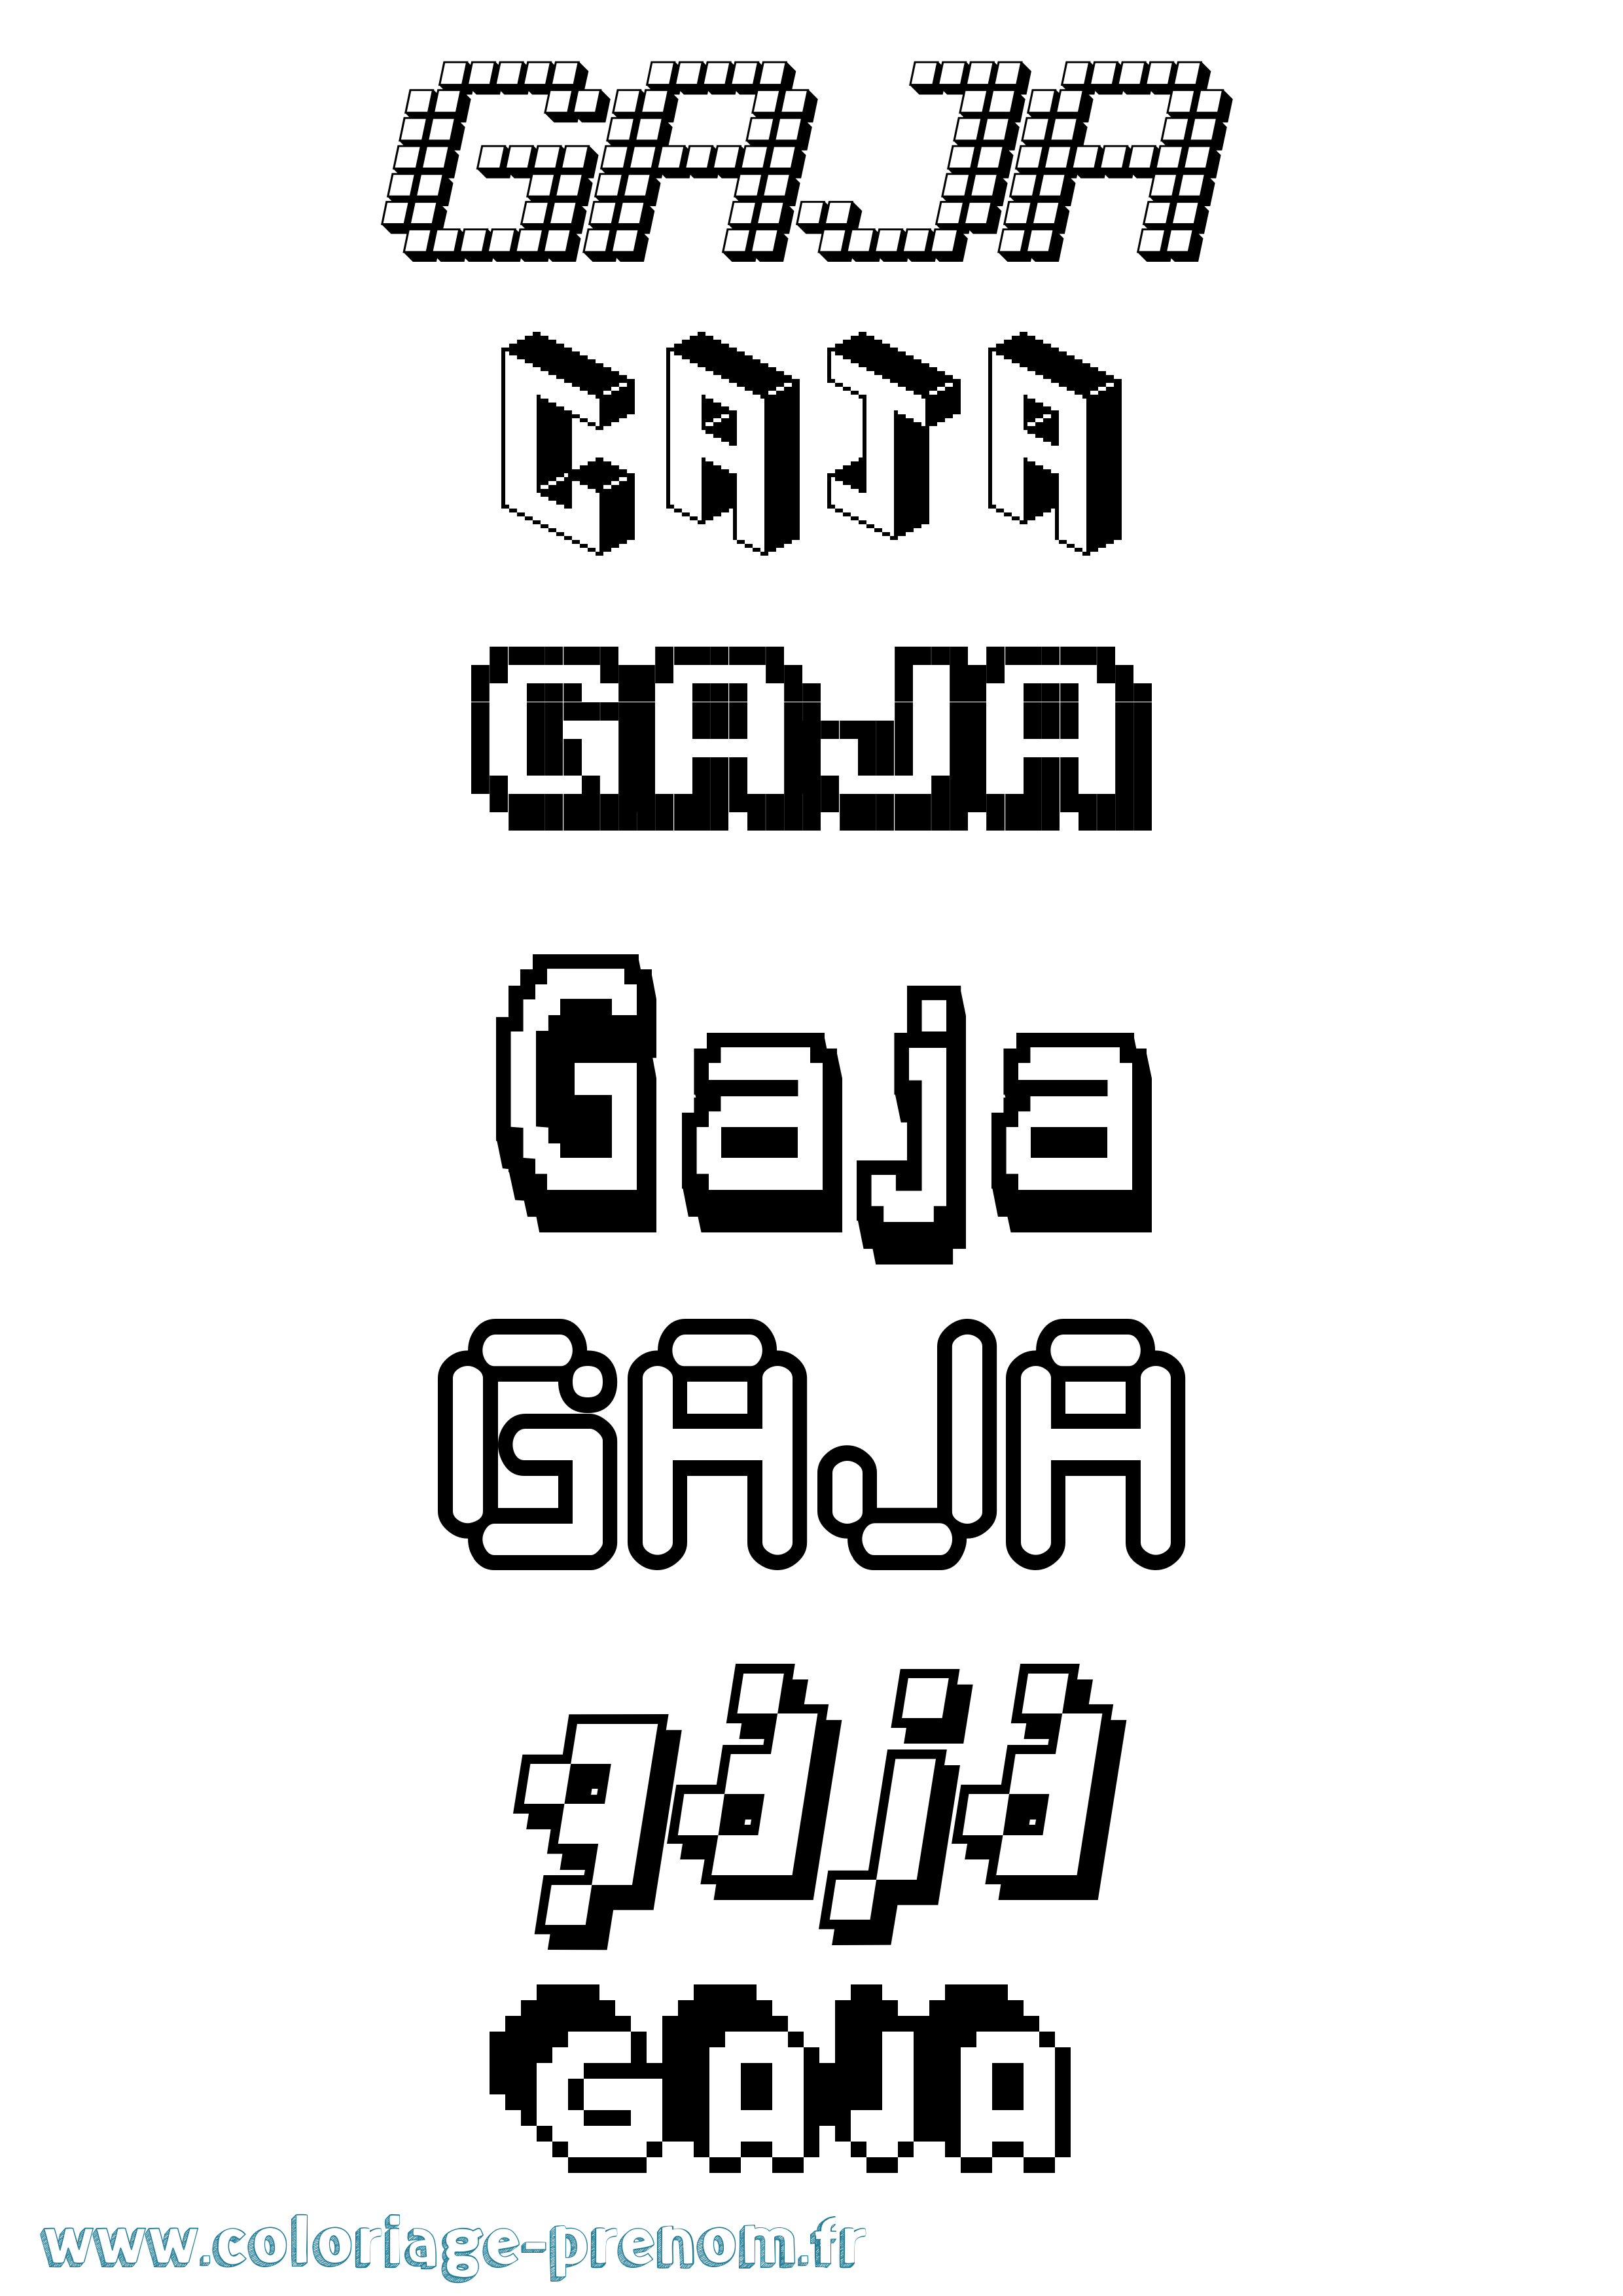 Coloriage prénom Gaja Pixel